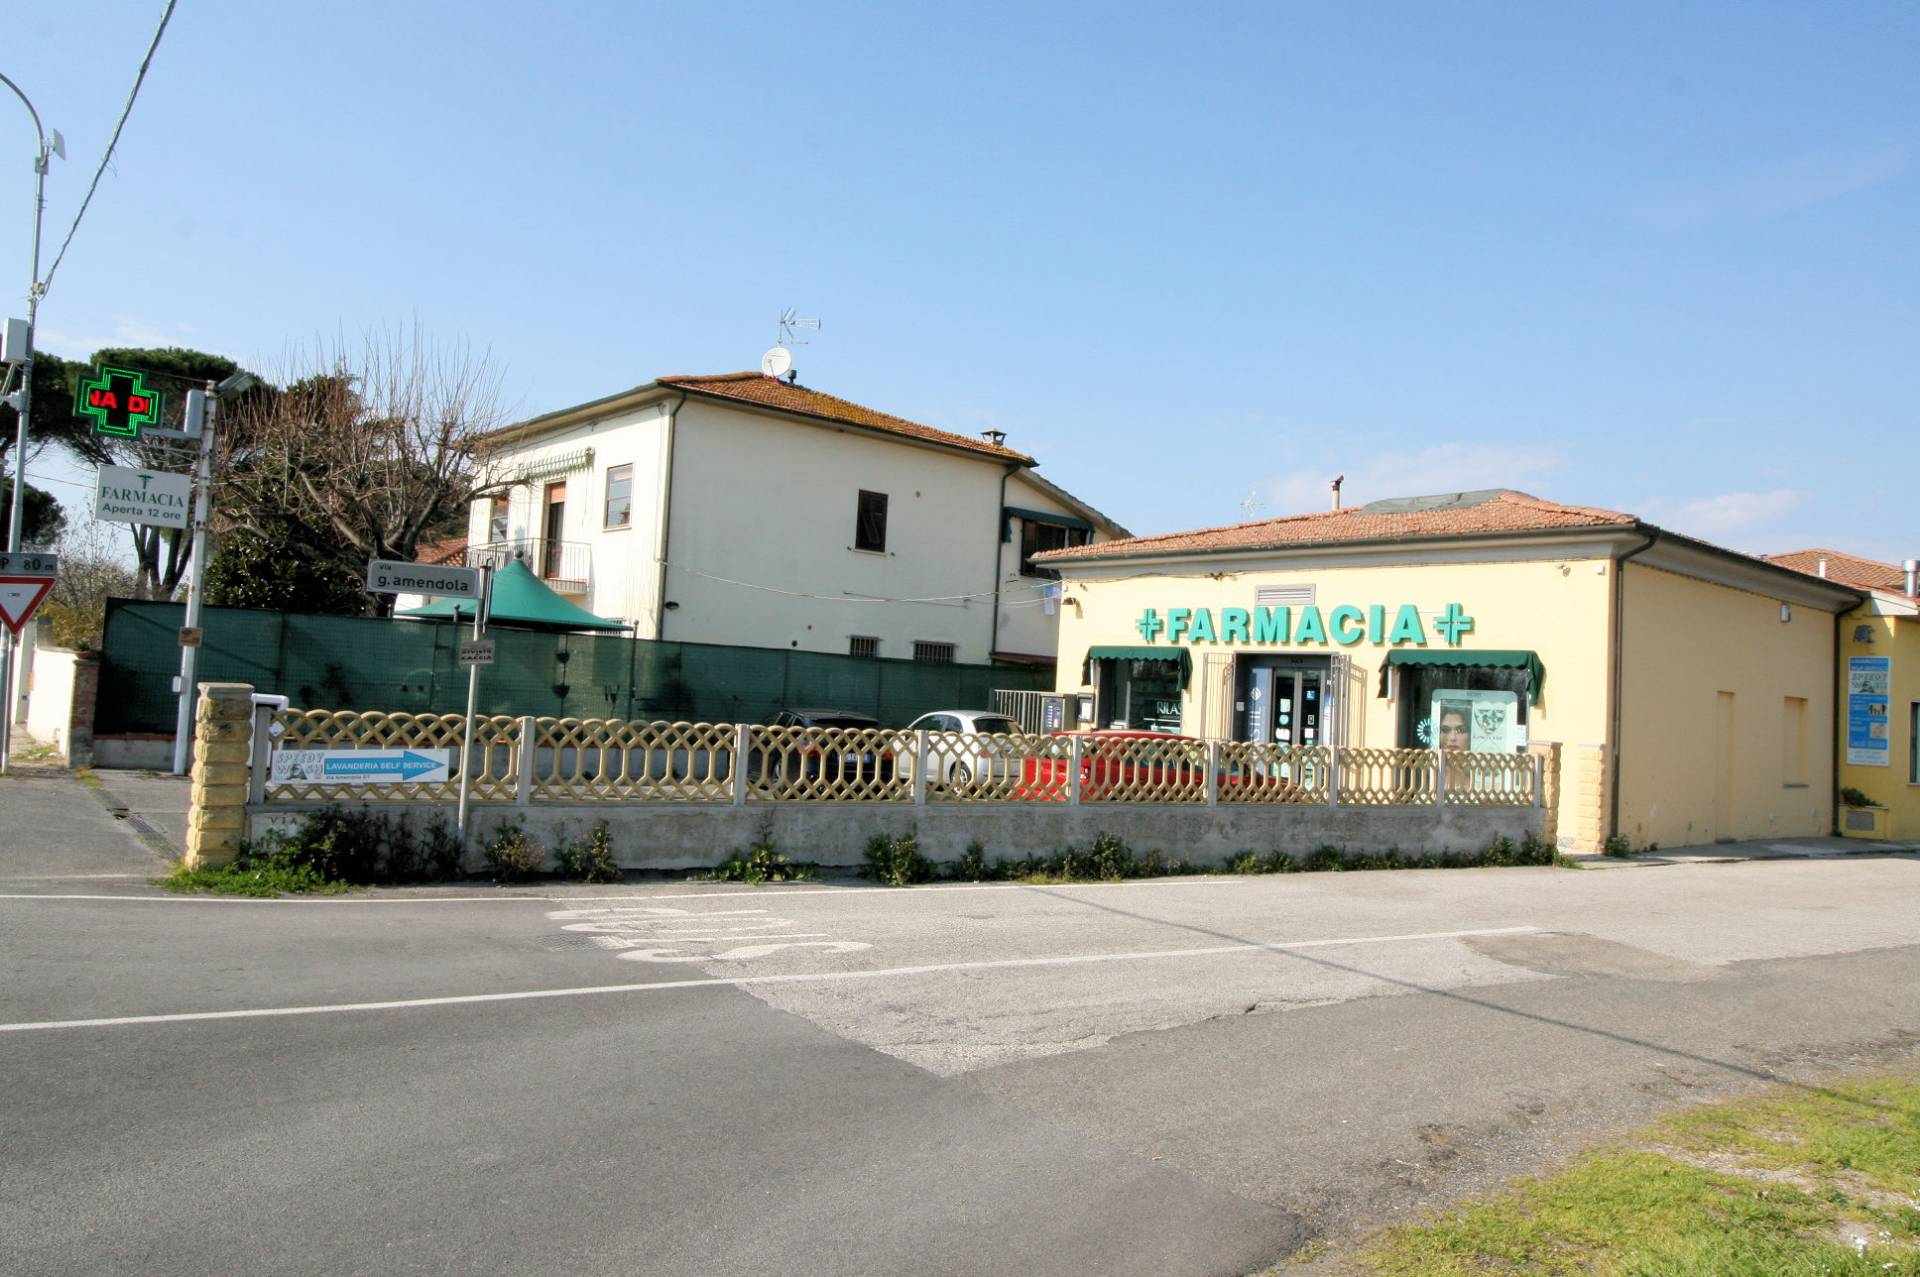 Soluzione Semindipendente in vendita a San Giuliano Terme, 4 locali, zona Località: MadonnadellAcqua, prezzo € 360.000 | PortaleAgenzieImmobiliari.it